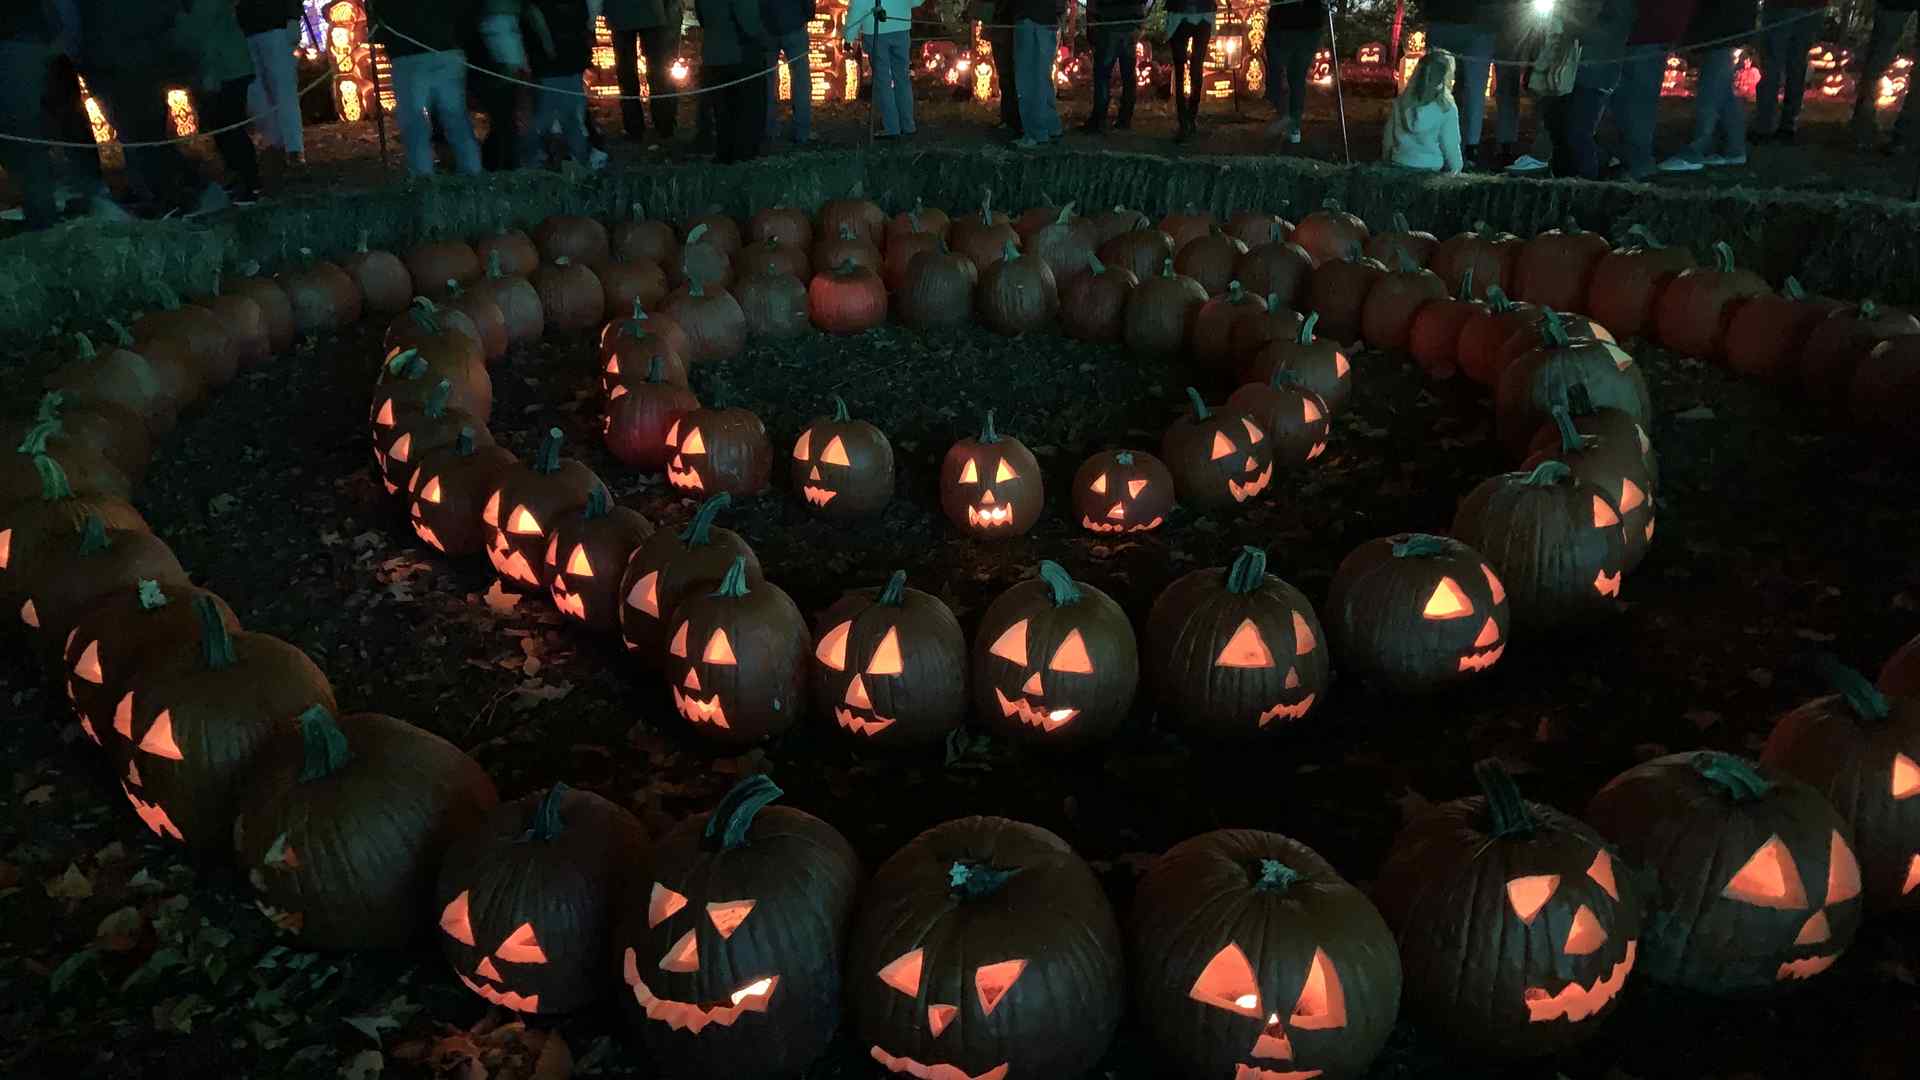 A display of jack-o-lanterns